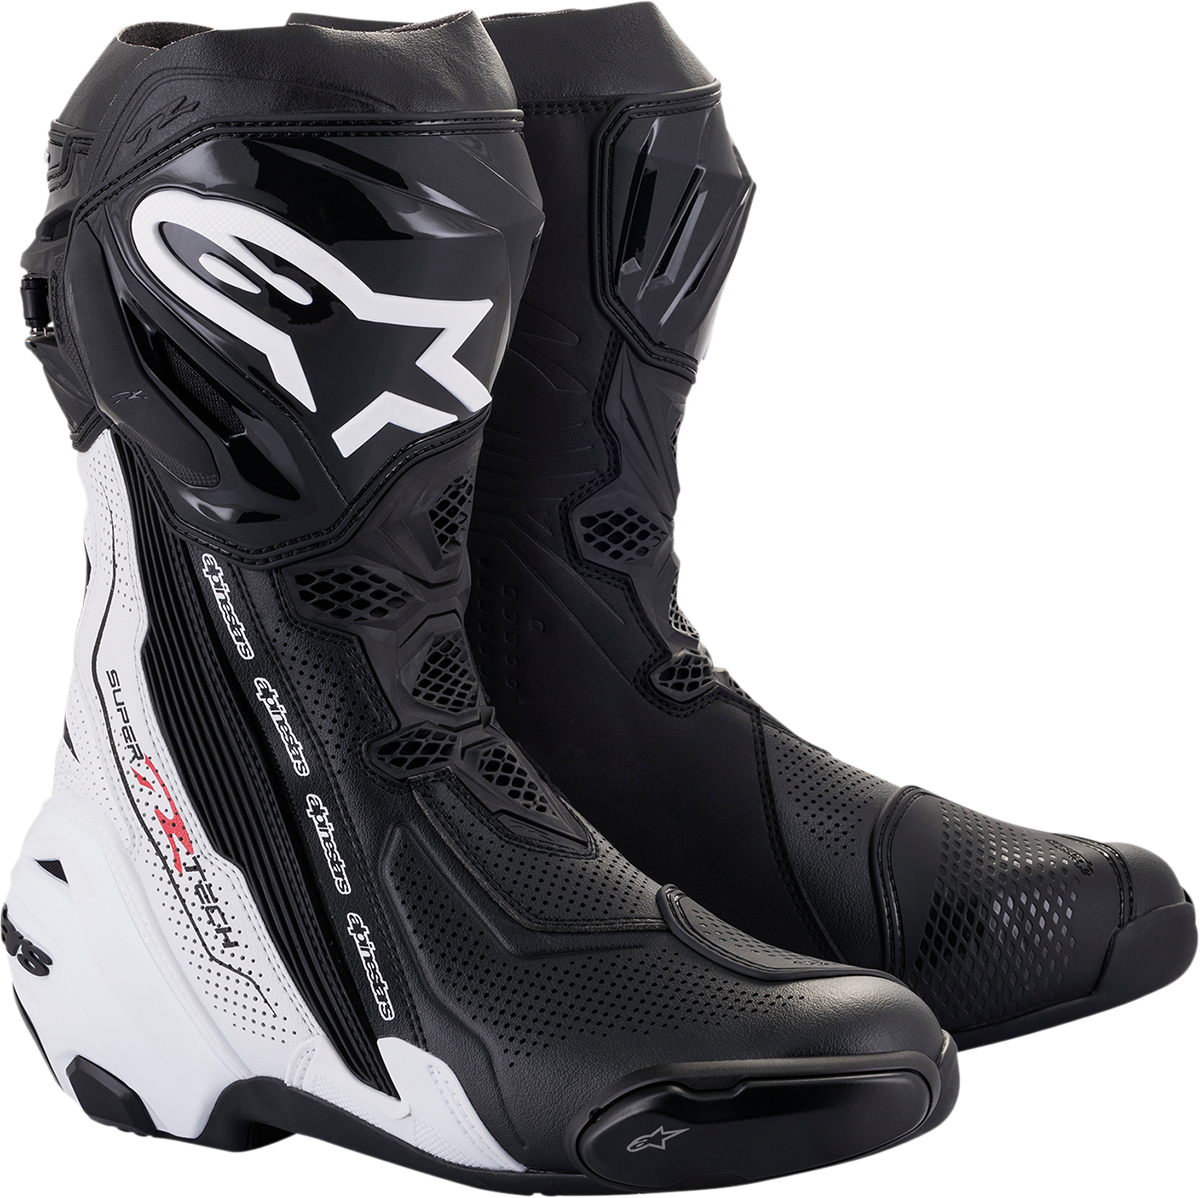 ALPINESTARS Supertech V Boots - Black/White - US 8 / EU 42 2220121-12-42